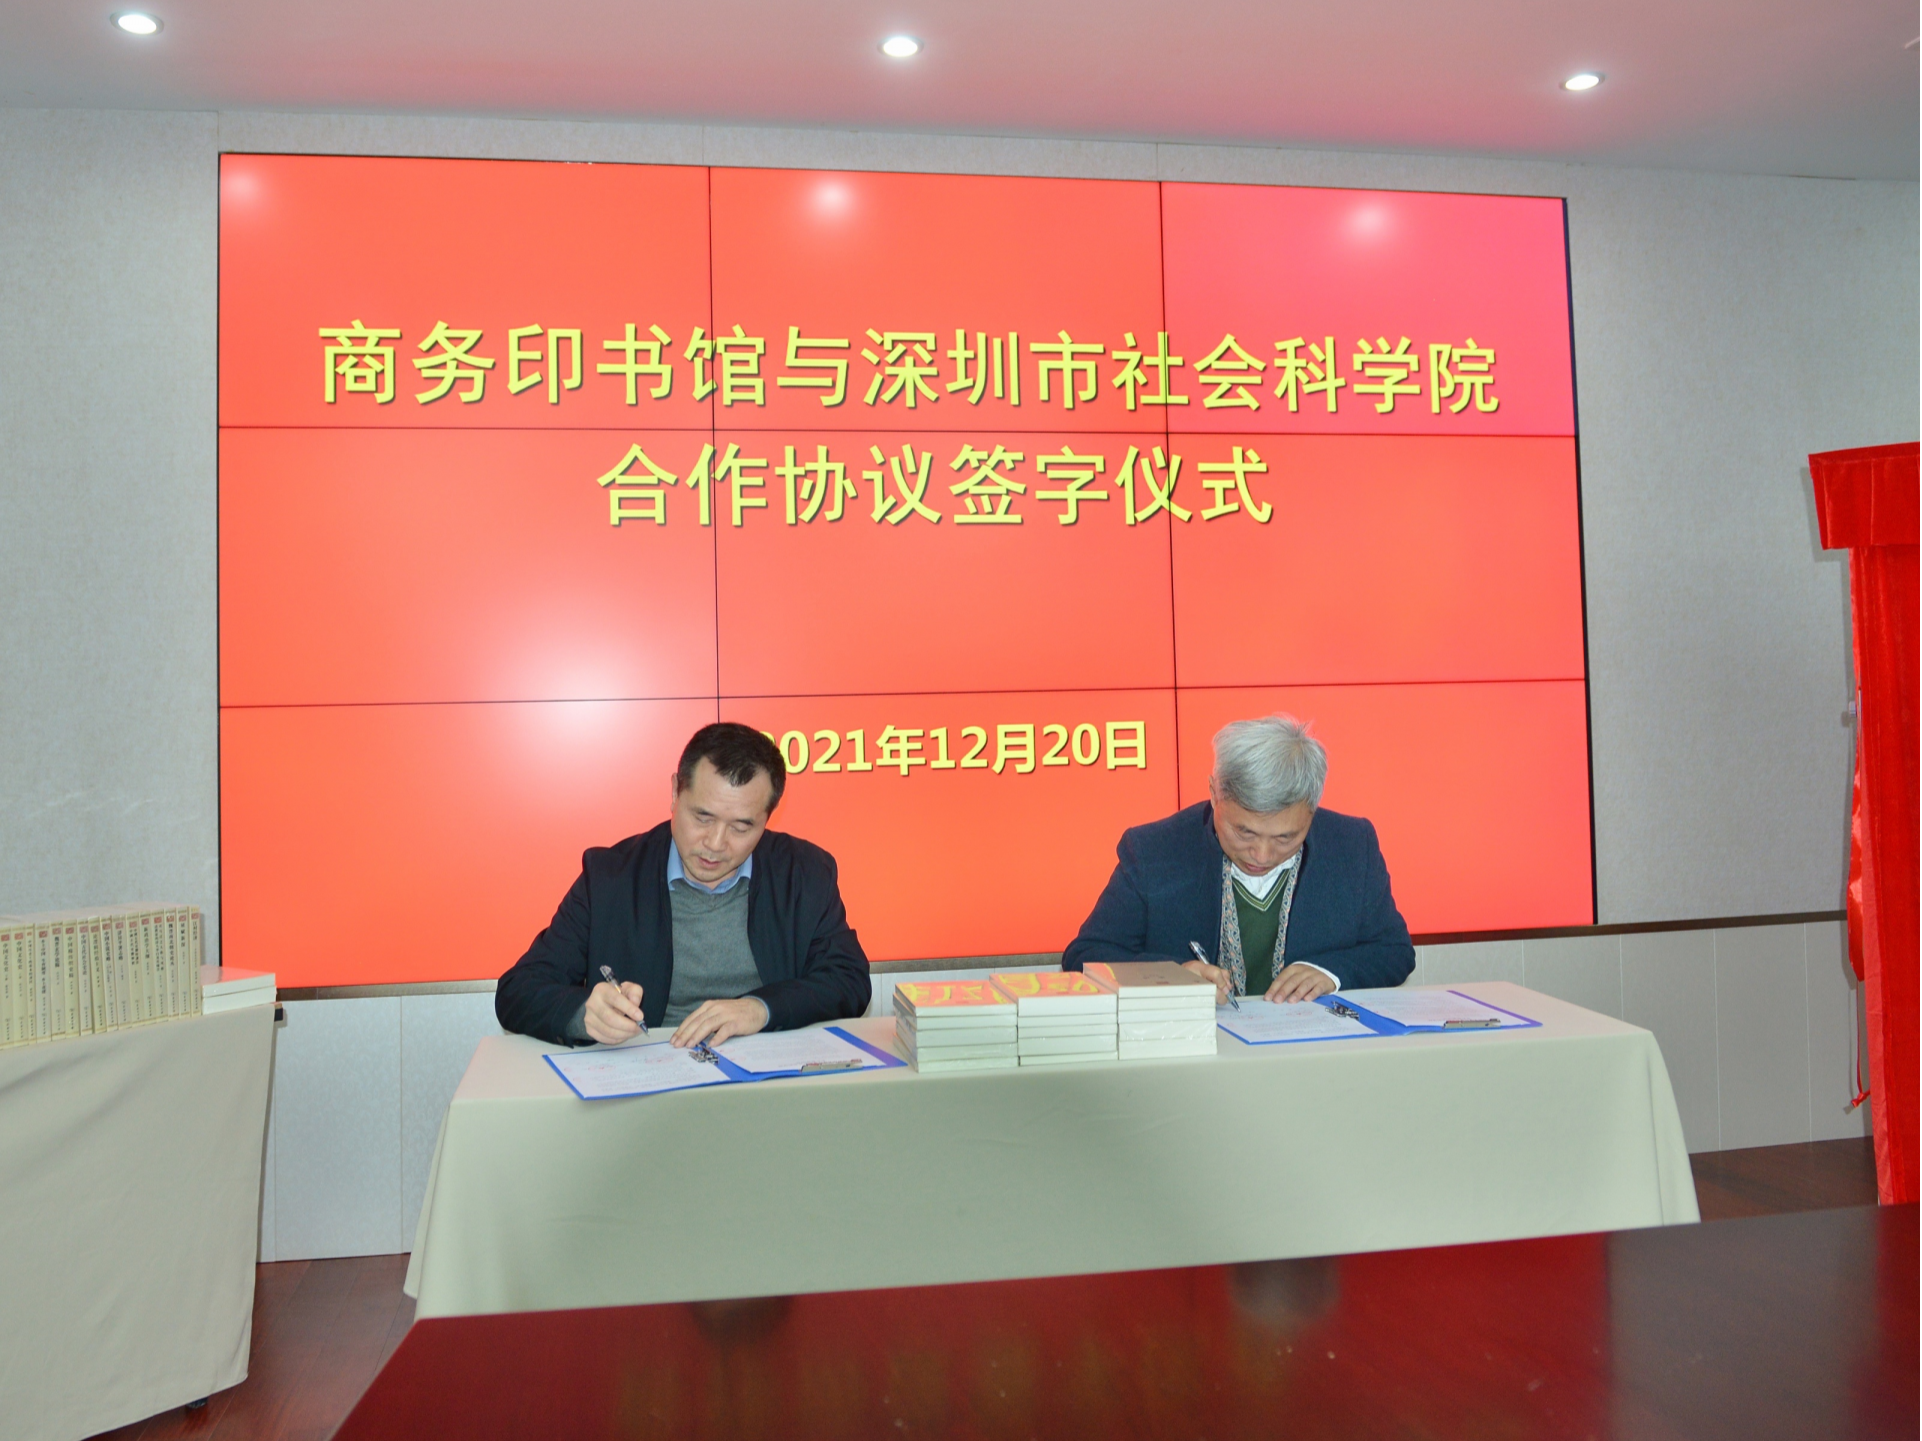 商务印书馆与深圳市社会科学院达成战略合作   